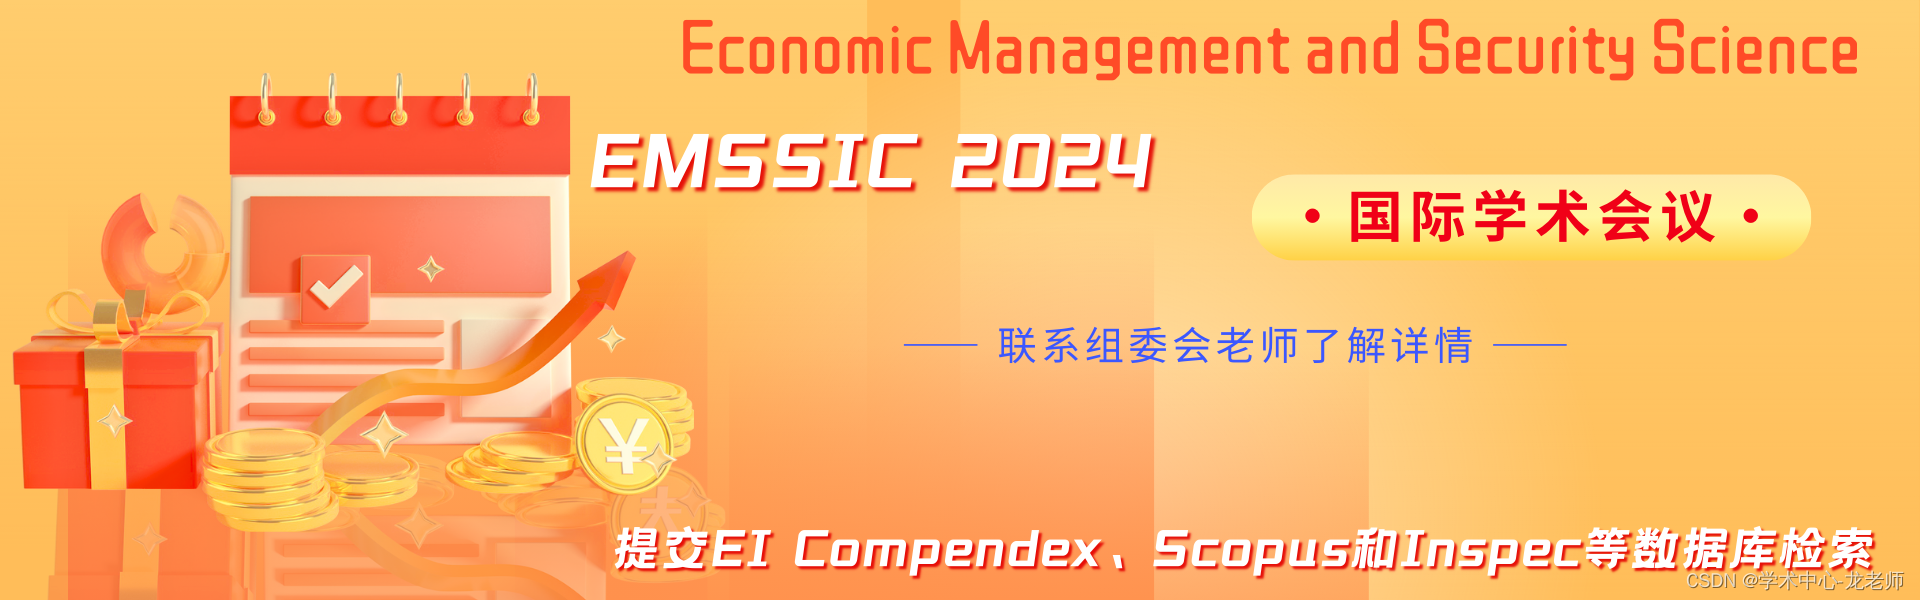 【稳定检索|投稿优惠】2024年经济管理与安全科学国际学术会议(EMSSIC 2024)